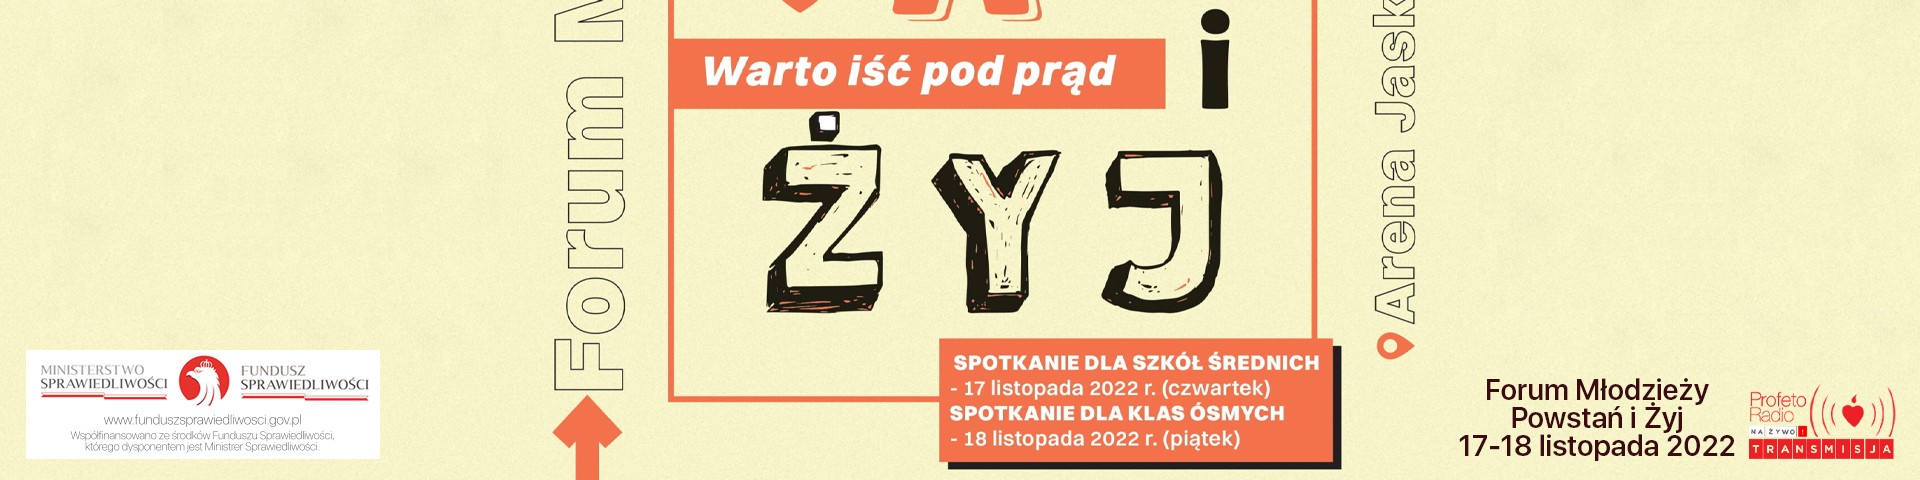 Forum młodzieży w Tarnowie - Powstań i żyj: Warto iść pod prąd